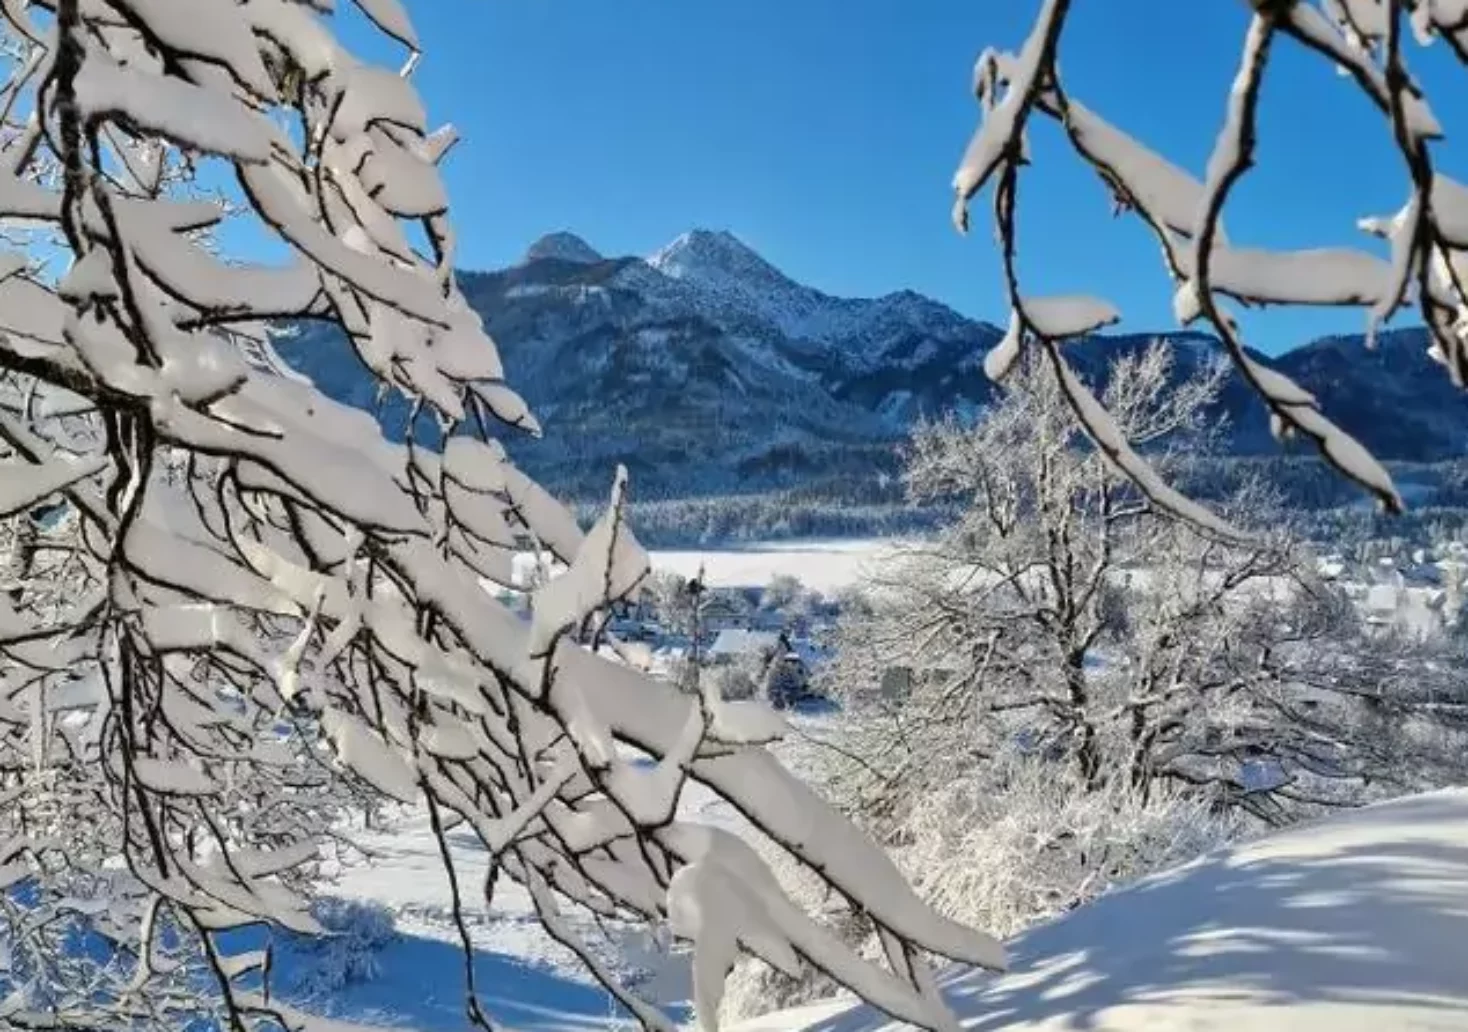 Foto auf 5min.at zeigt eine verschneite Landschaft in Kärnten.